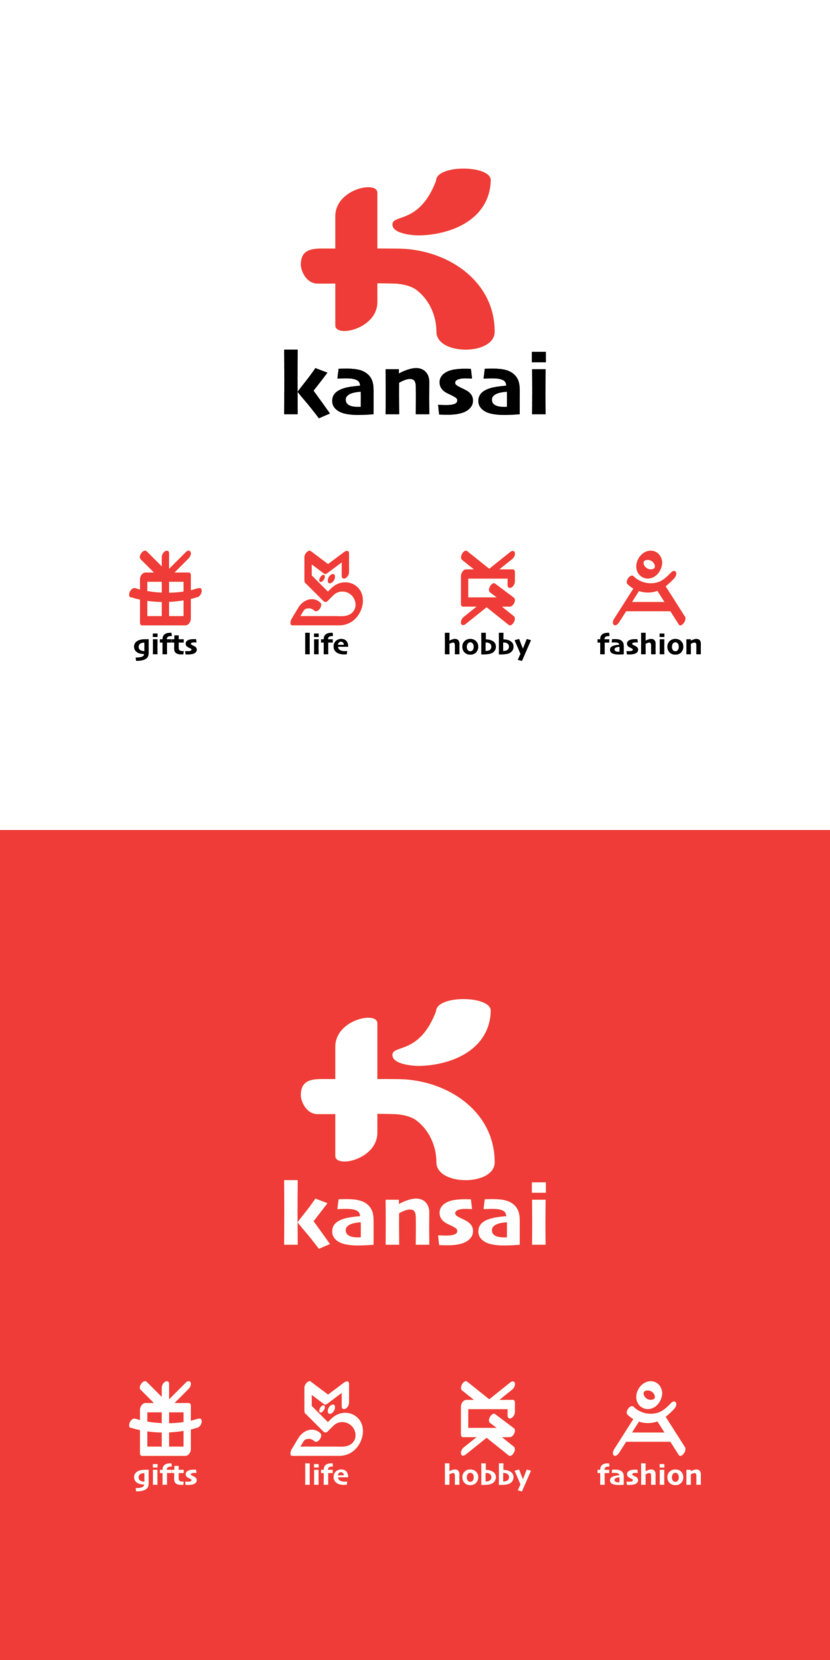 конкурс на разработку дизайна логотипа и фирменного стиля бренда KANSAI для магазинов крупных форматов